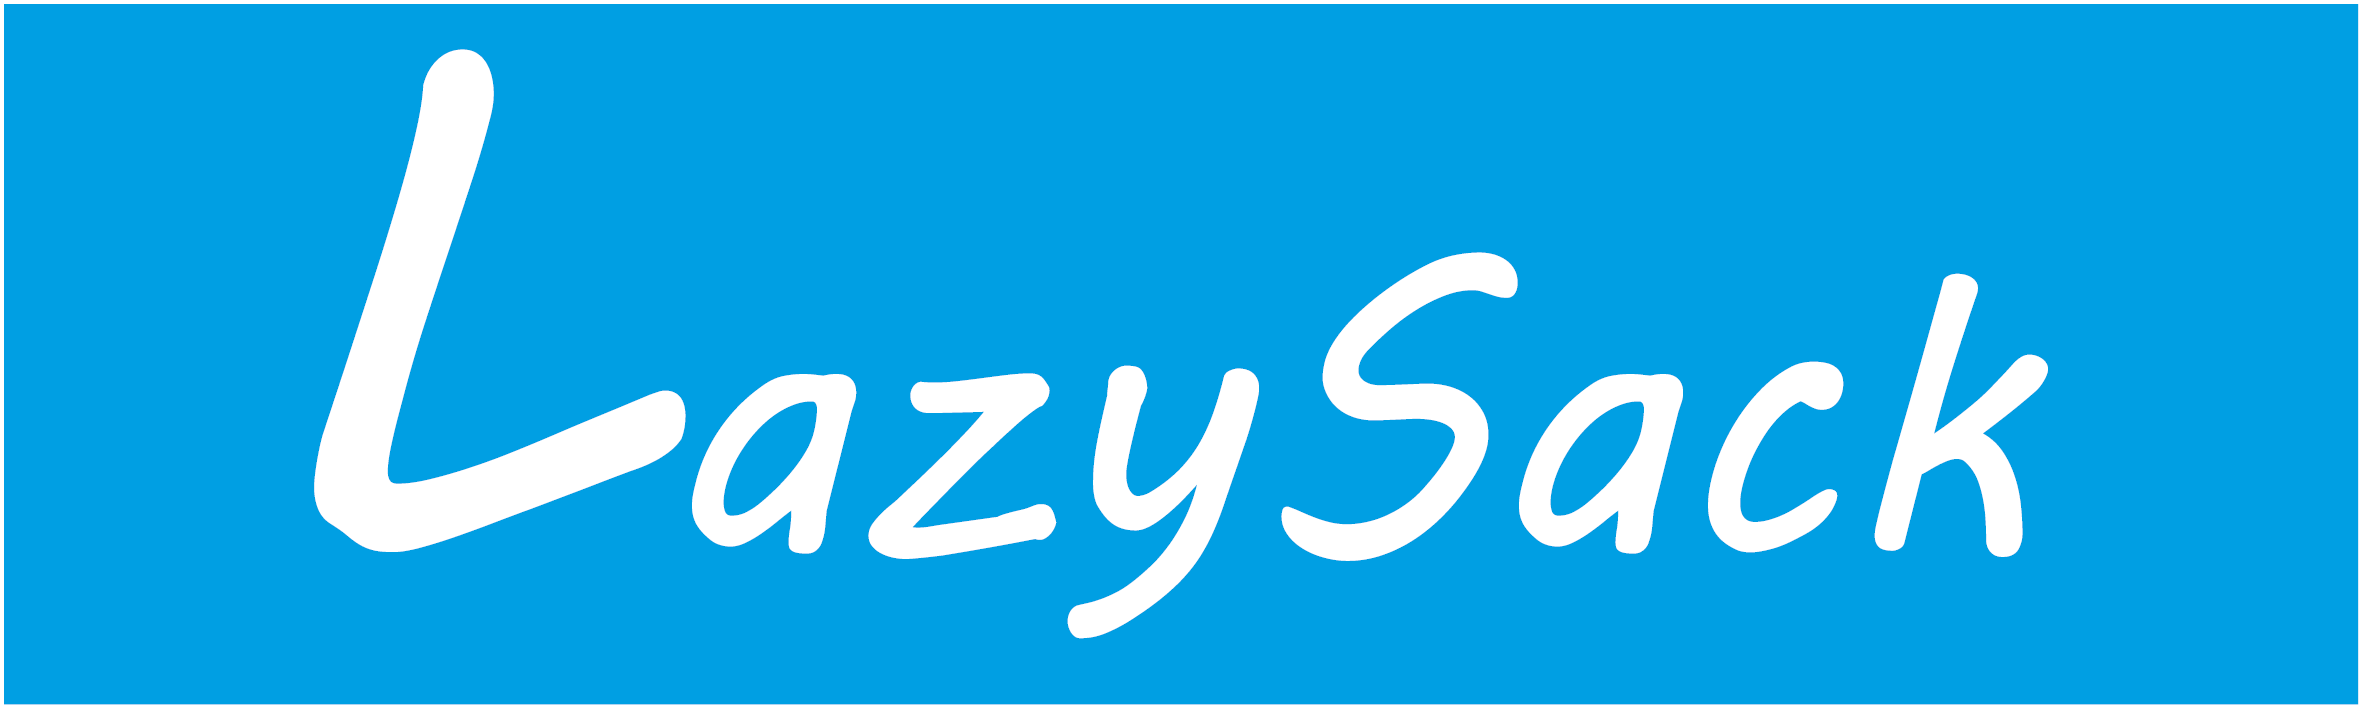 LayzySack - För lata dagar i solen